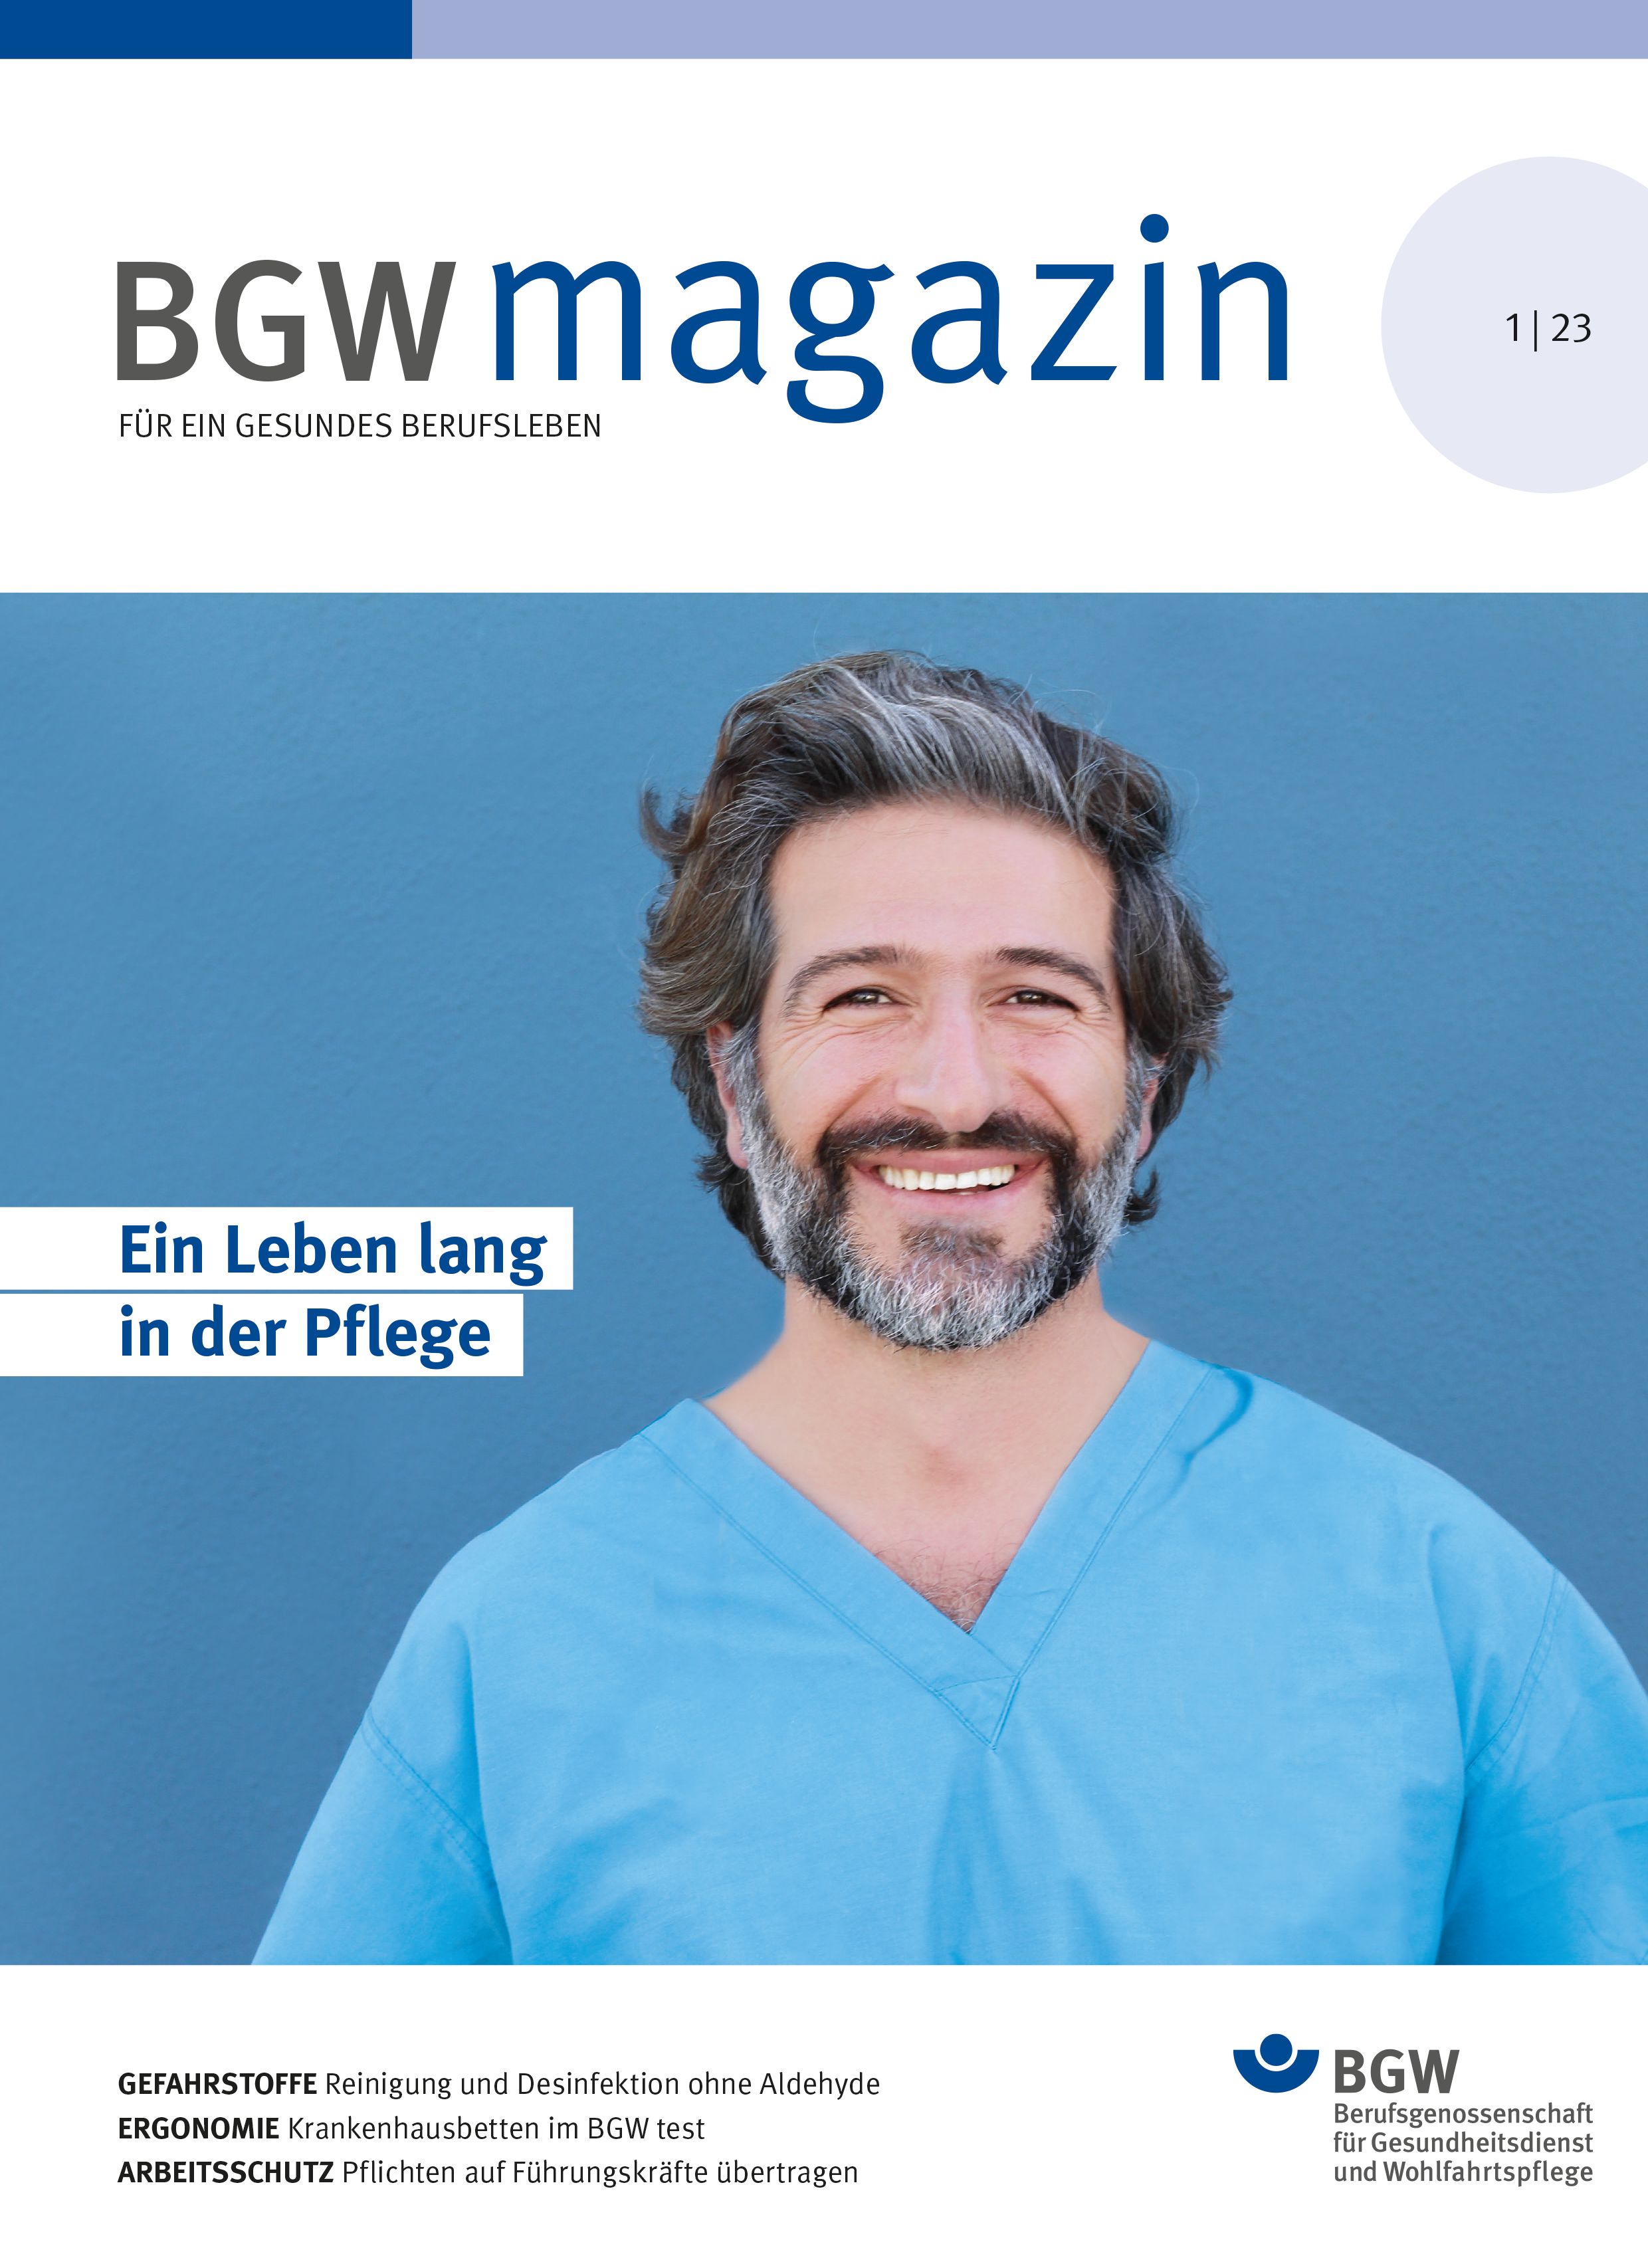 Titel: BGWmagazin, Ausgabe 1/2023 - 1-2023 - Mann mit Bart und grauen Haaren in Pflege-Kleidung lacht in die Kamera.